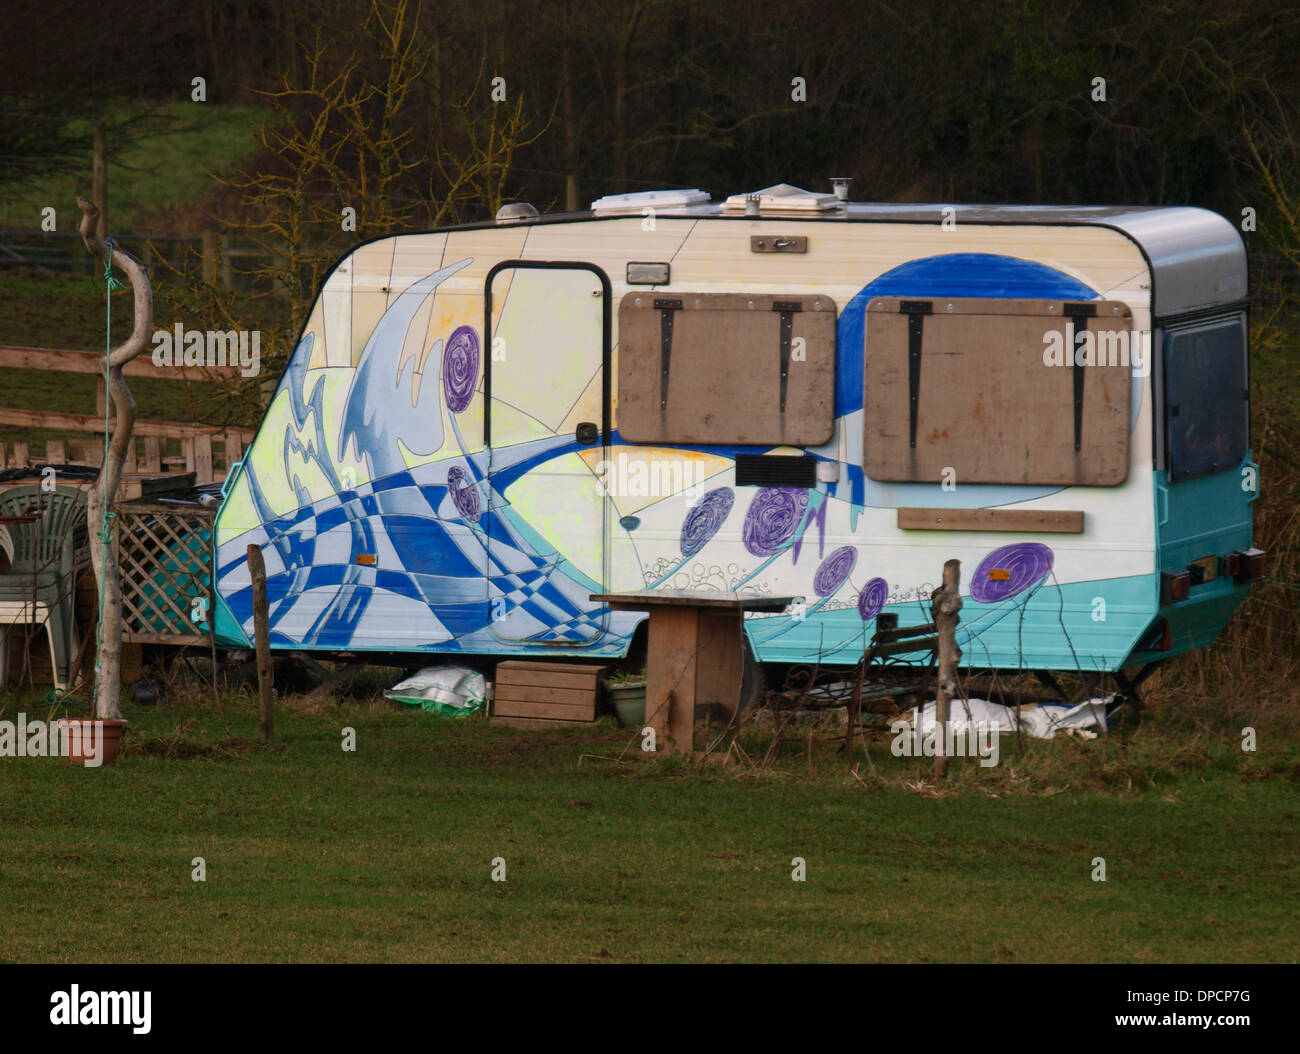 Caravane peinte inhabituelle, Cornwall, UK Banque D'Images